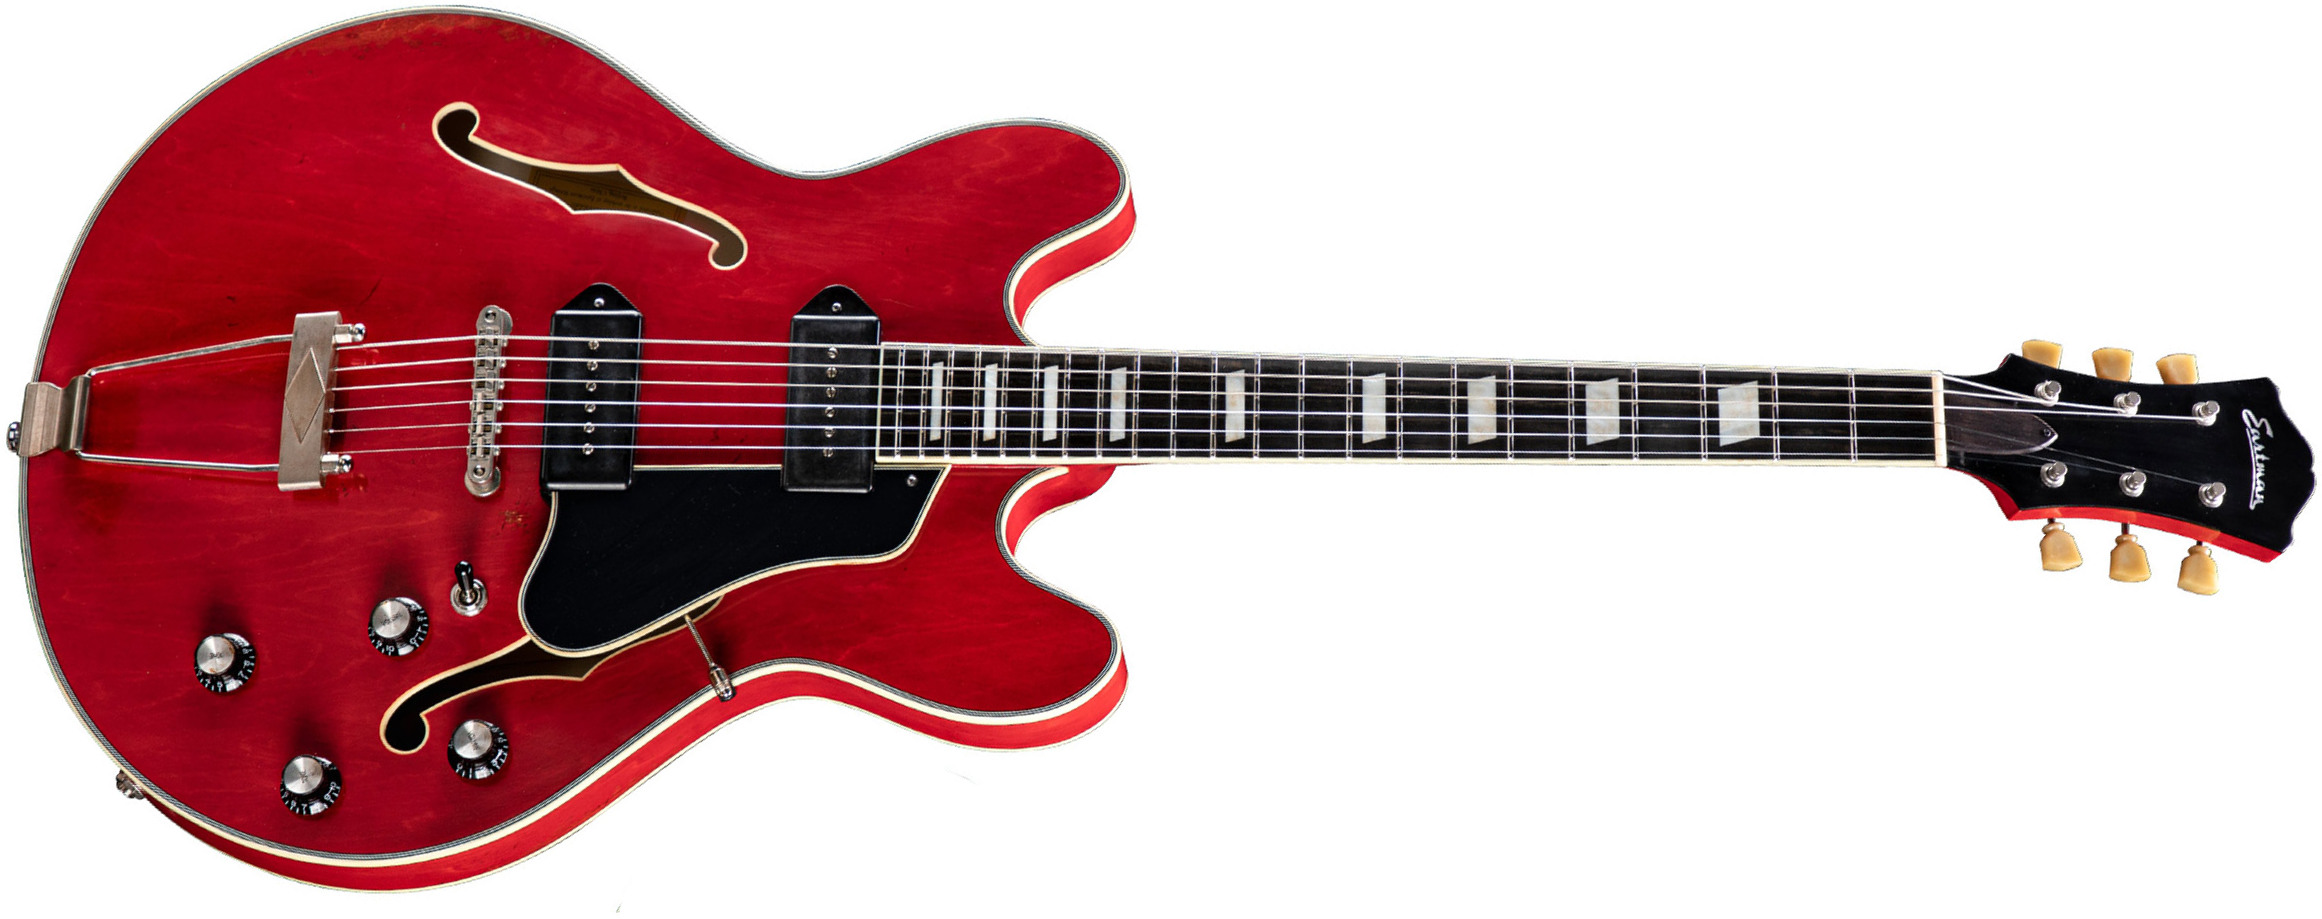 Eastman T64/v Thinline Laminate Tout Erable 2p90 Lollar Ht Eb - Antique Red - Semi-Hollow E-Gitarre - Main picture